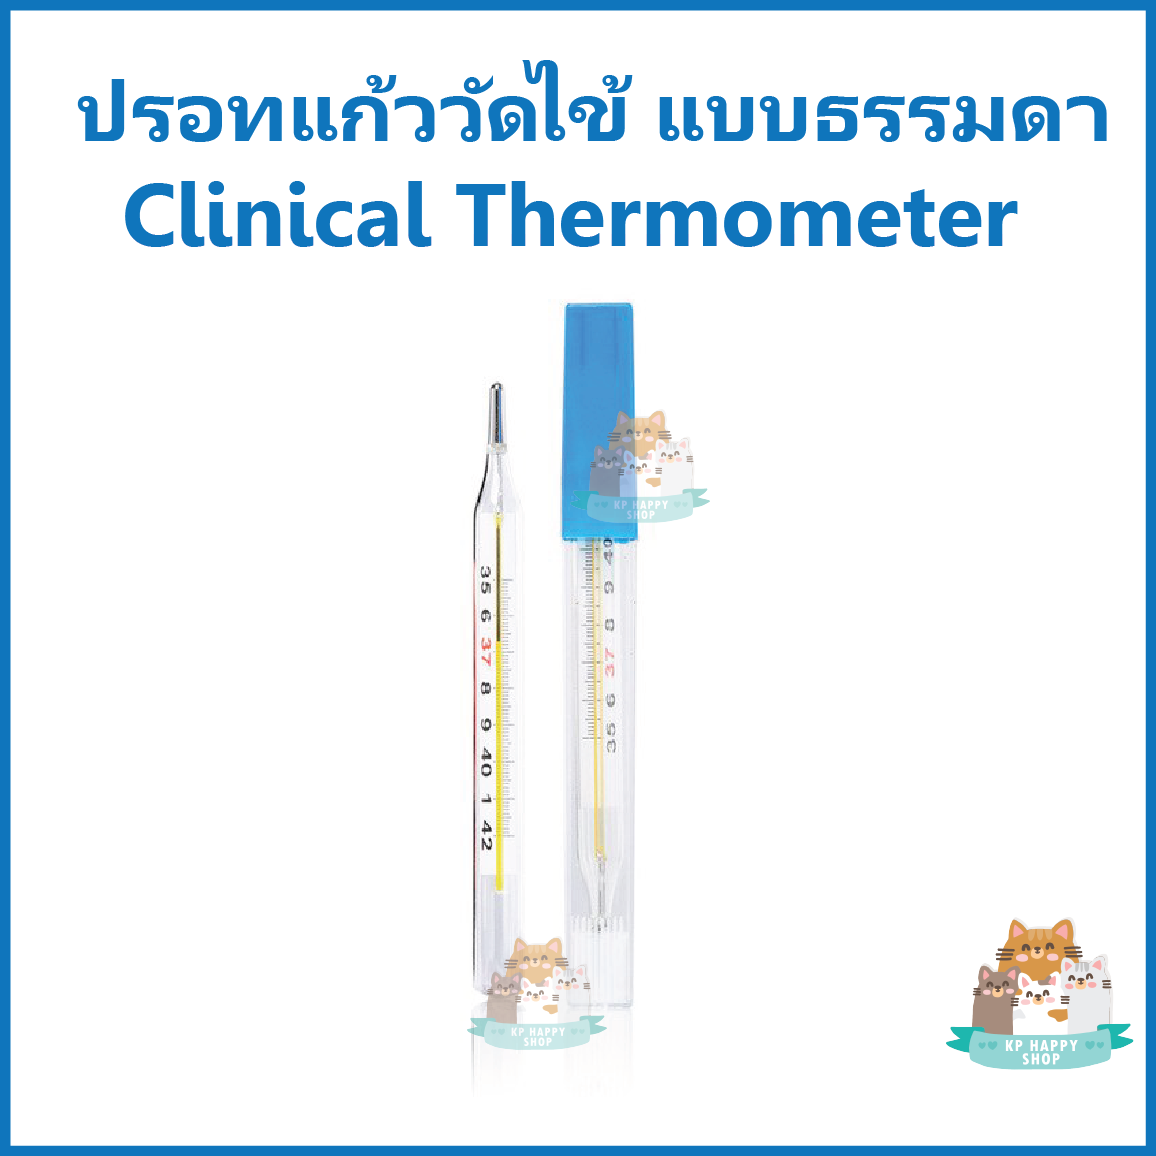 (1 ชิ้น) ปรอทวัดไข้ ปรอทแก้ว แบบธรรมดา ธรรมดา ที่วัดไข้ เทอร์โมมิเตอร์ Armpit Clinical Thermometer